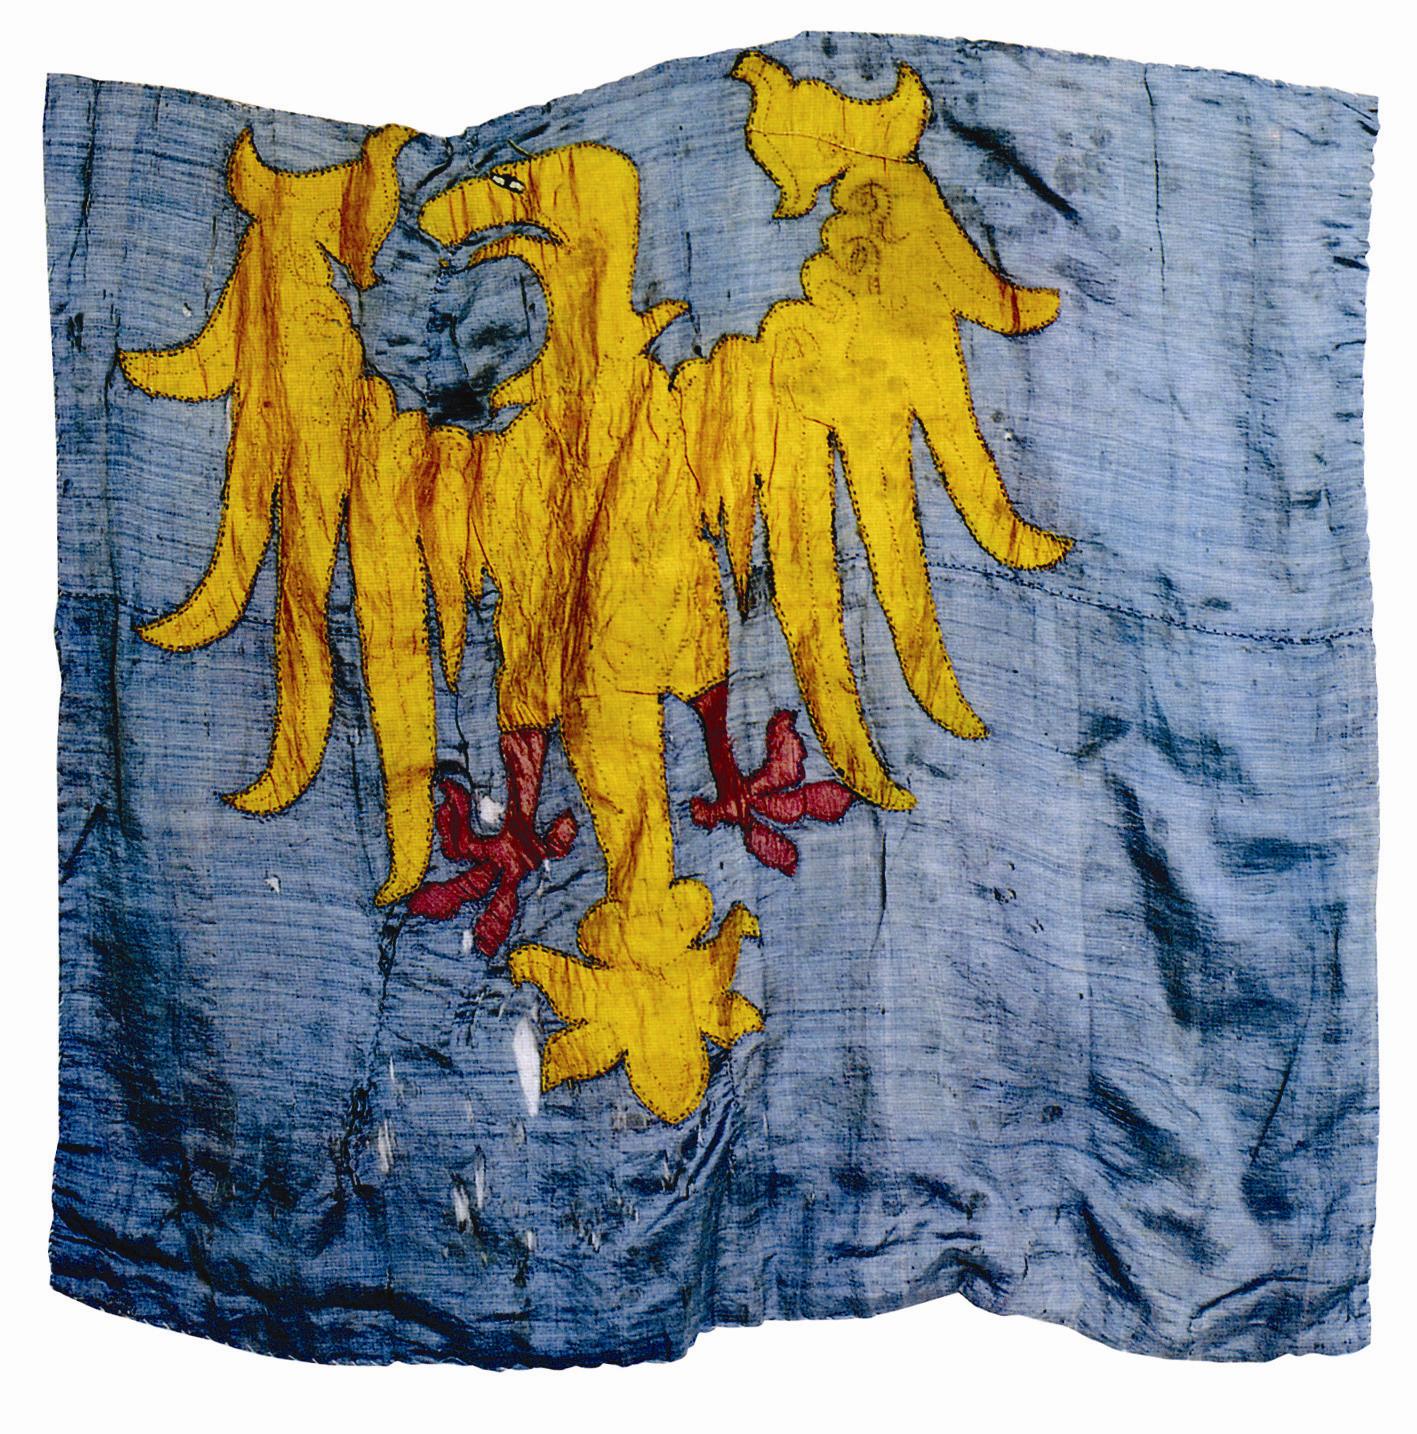 La bandiera del Friuli (bandiere dal Fril in friulano)  la bandiera della regione storica del Friuli, ufficialmente riconosciuta dalla legge che tutela le minoranze linguistiche,  esposta nei comuni e nelle provincie friulanofone. Al centro di essa campeggia un'aquila gialla rivolta verso destra con le ali aperte, su uno sfondo blu.